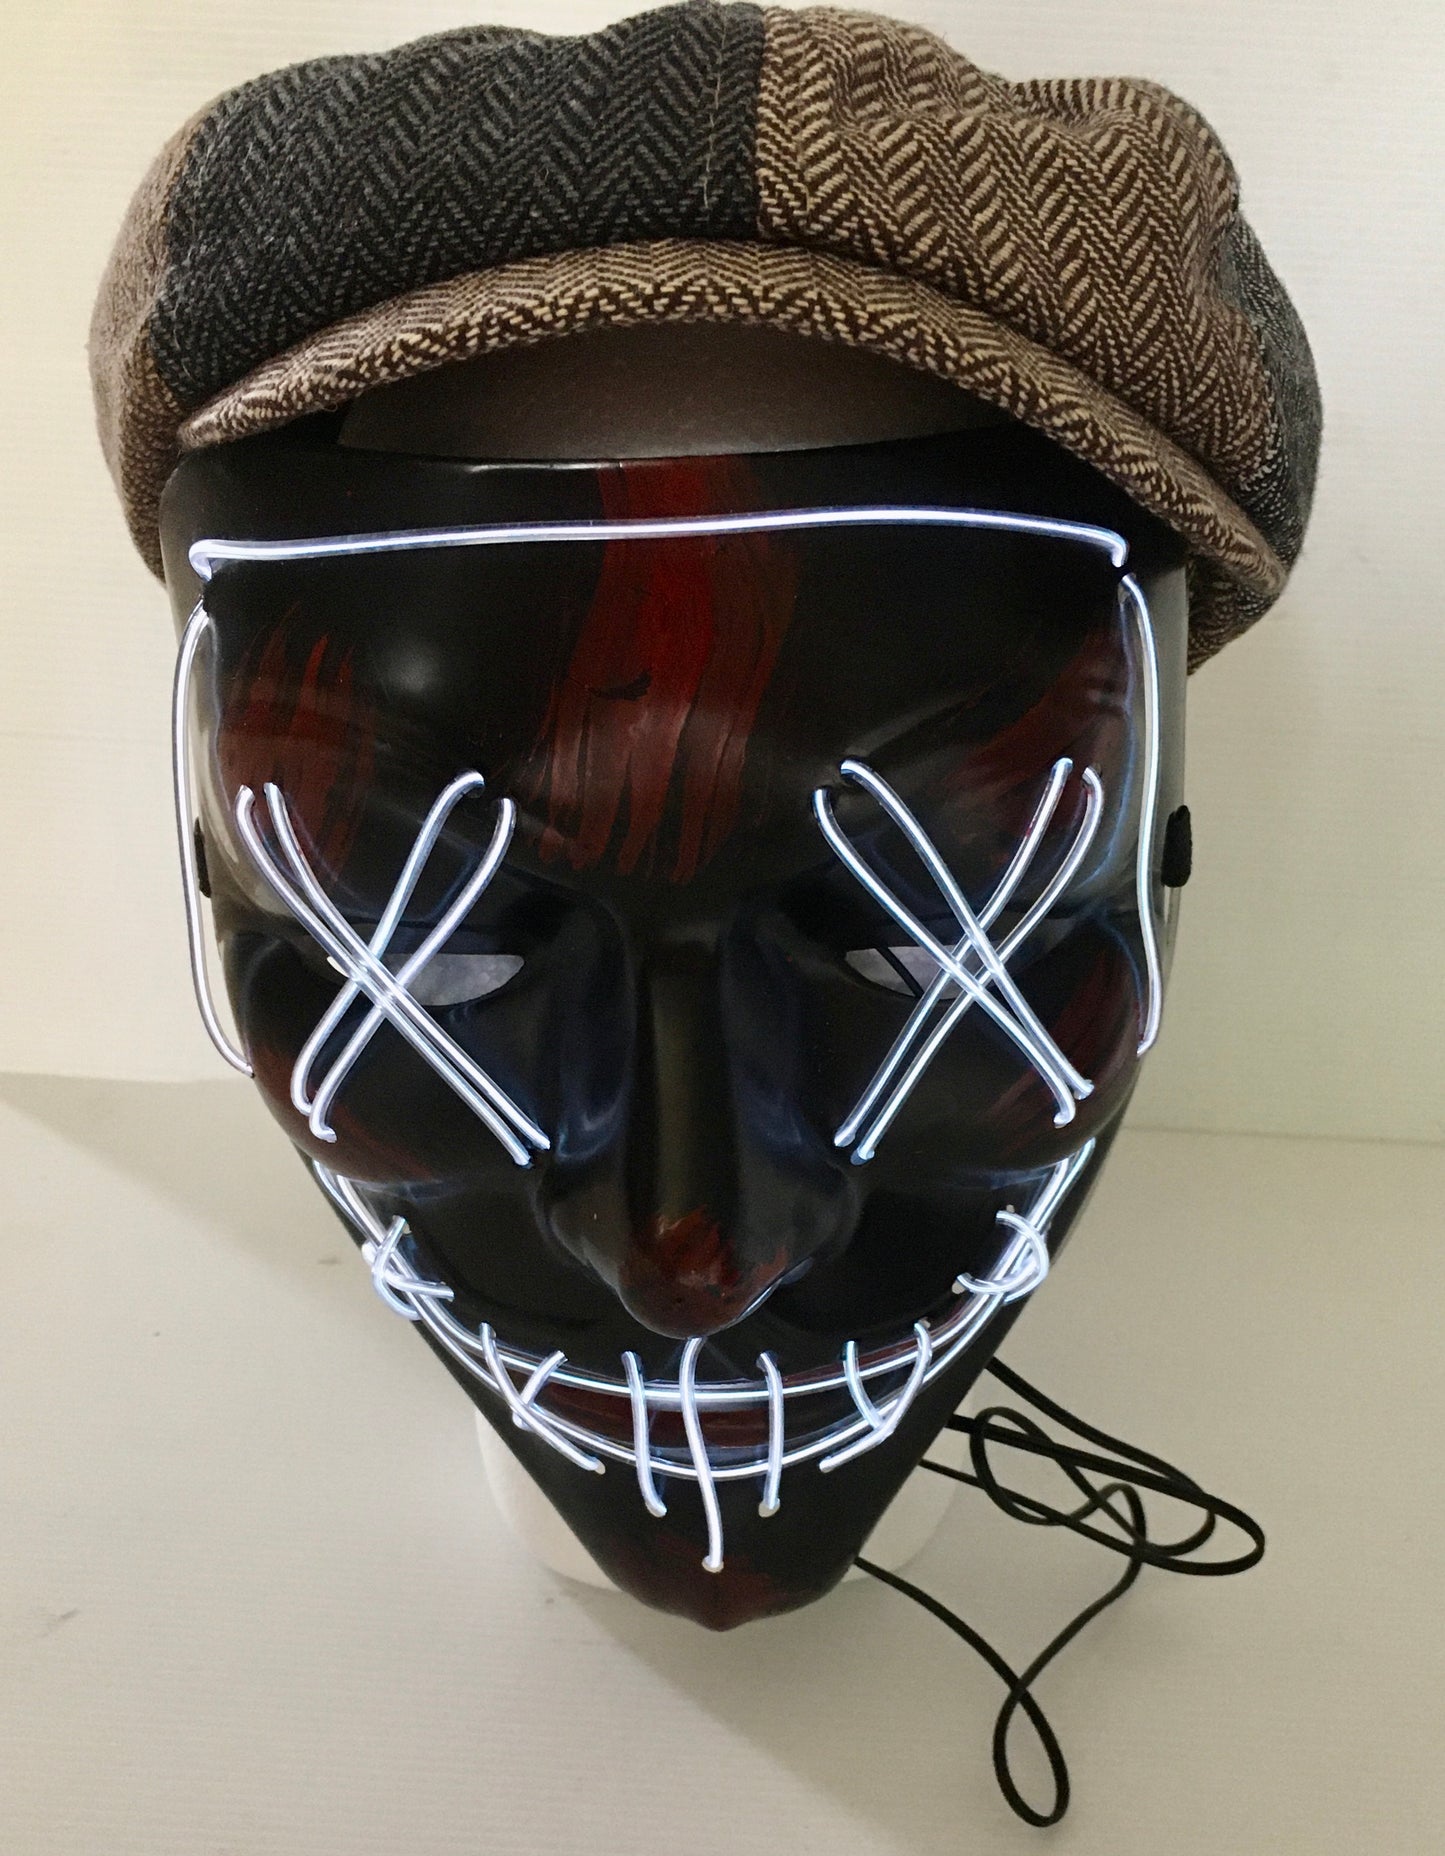 Masquerade / party mask